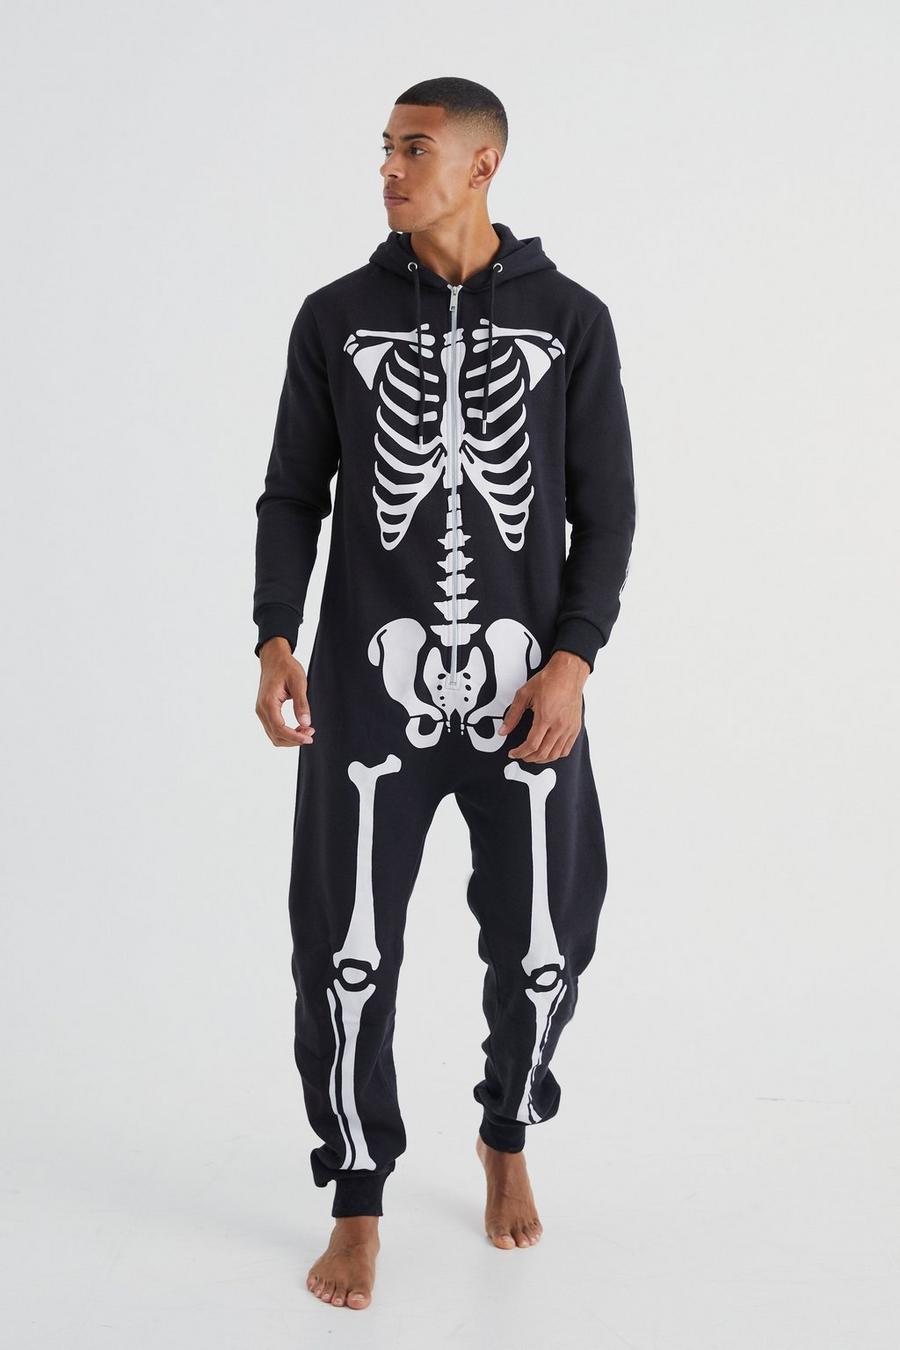 Pijama enterizo negro con esqueleto, Black nero